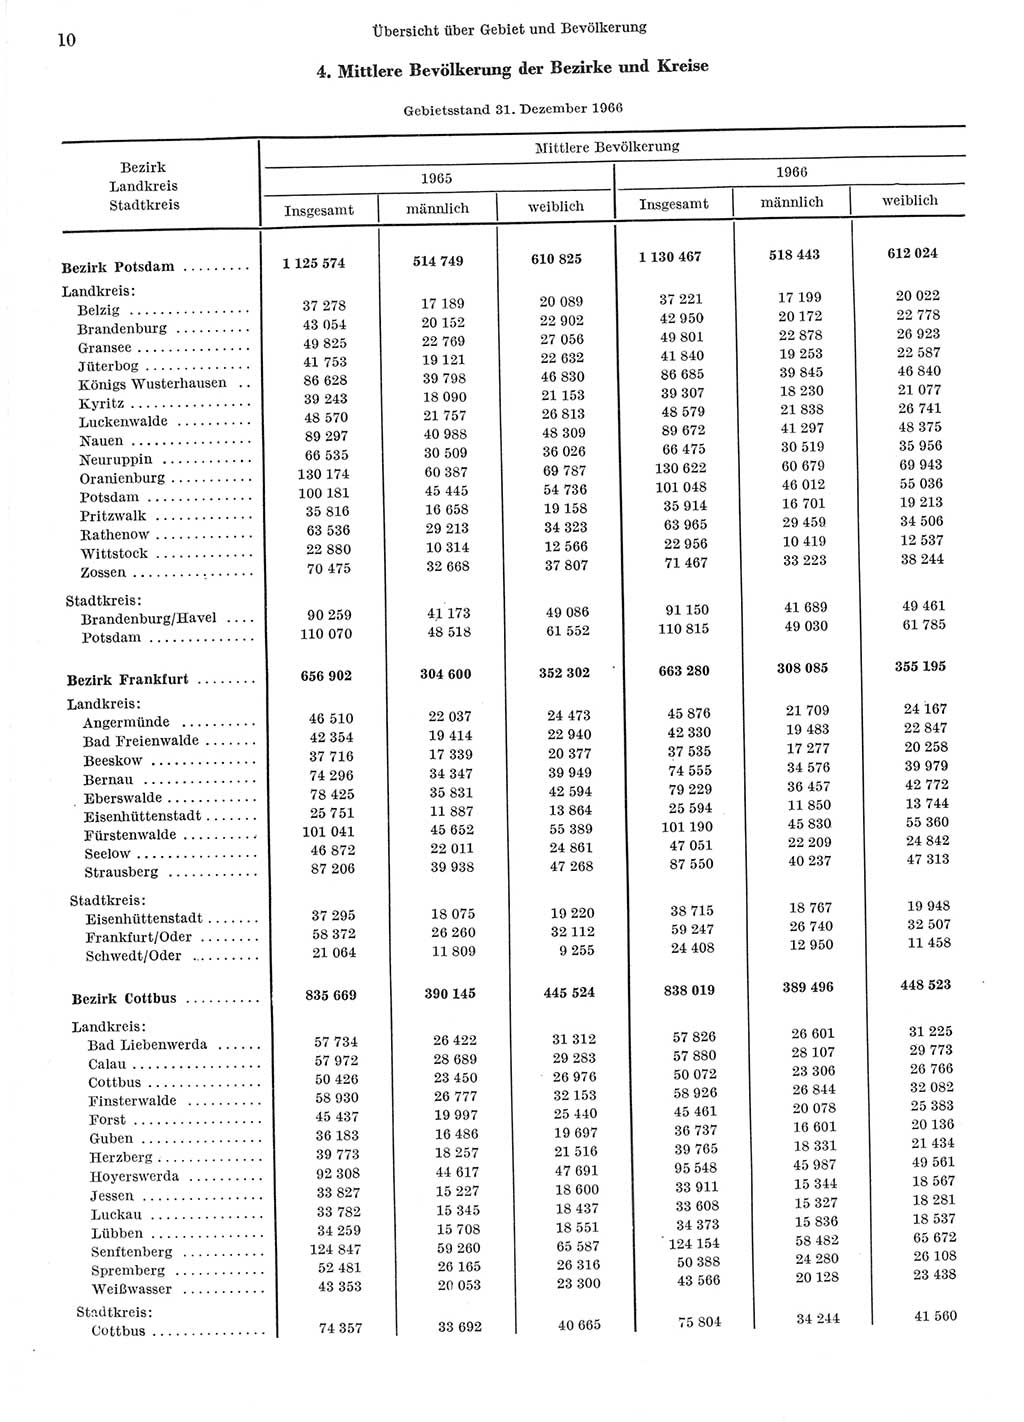 Statistisches Jahrbuch der Deutschen Demokratischen Republik (DDR) 1967, Seite 10 (Stat. Jb. DDR 1967, S. 10)